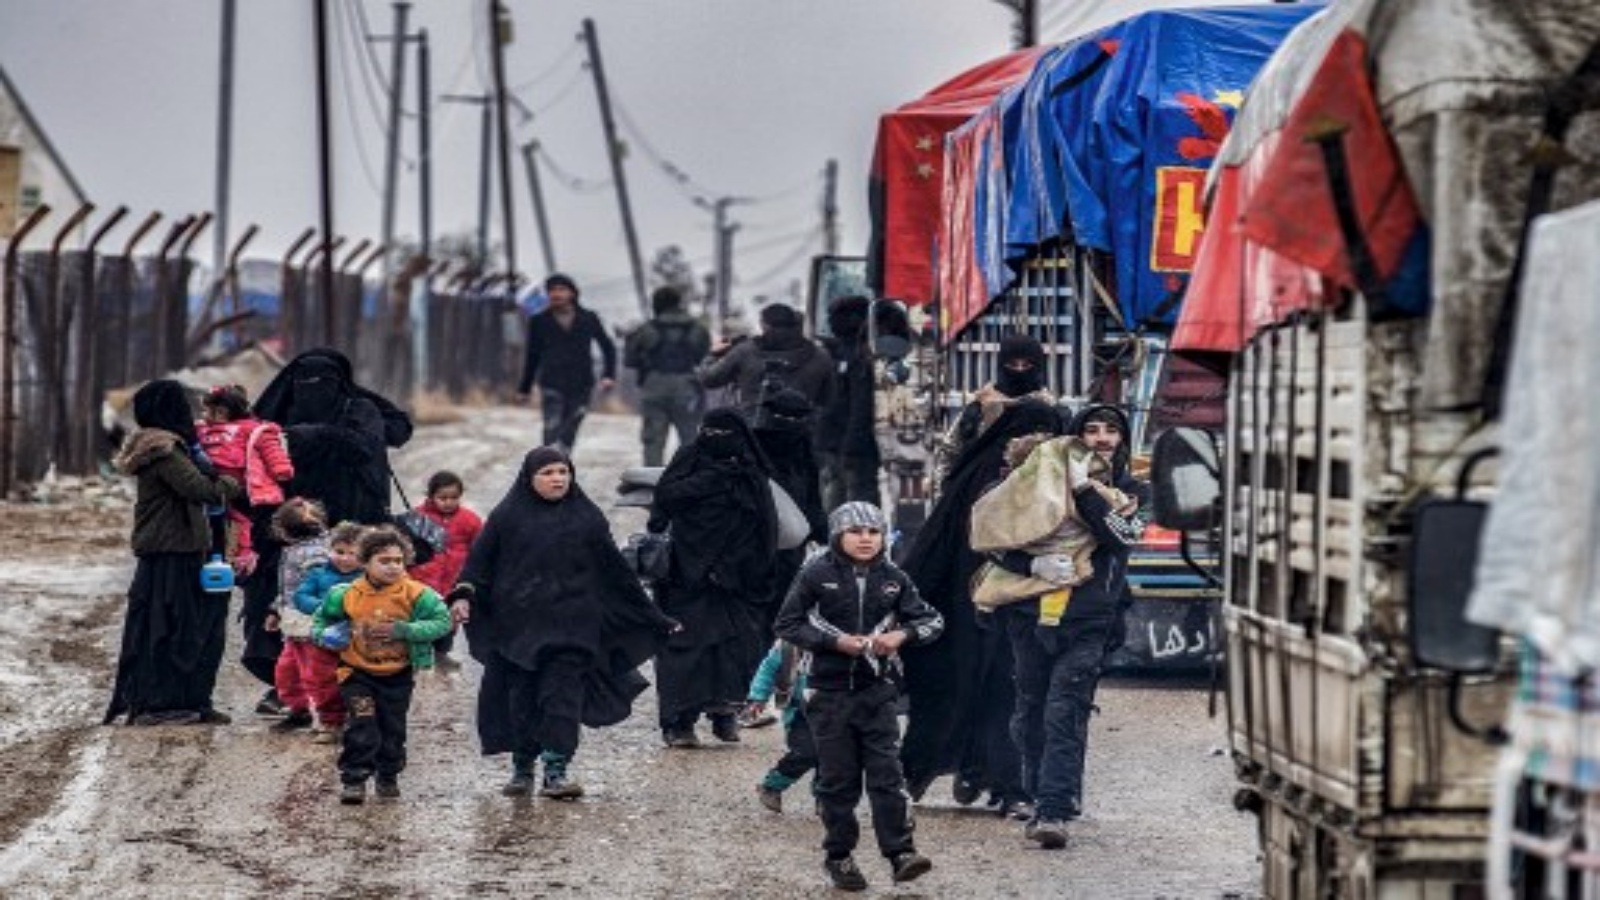 رجل يحمل طفلًا وهو يسير مع نساء وأطفال آخرين أمام أحد عناصر جهاز الأمن الداخلي الكردستاني السوري المعروف باسم الأسايش أثناء توجههم نحو الشاحنات ، أثناء إطلاق سراح الأشخاص المشتبه في ارتباطهم بمقاتلي تنظيم الدولة الإسلامية (داعش) من مخيم الهول الذي يديره الأكراد في محافظة الحسكة شمال شرق سوريا ، في 19 (يناير) 2021